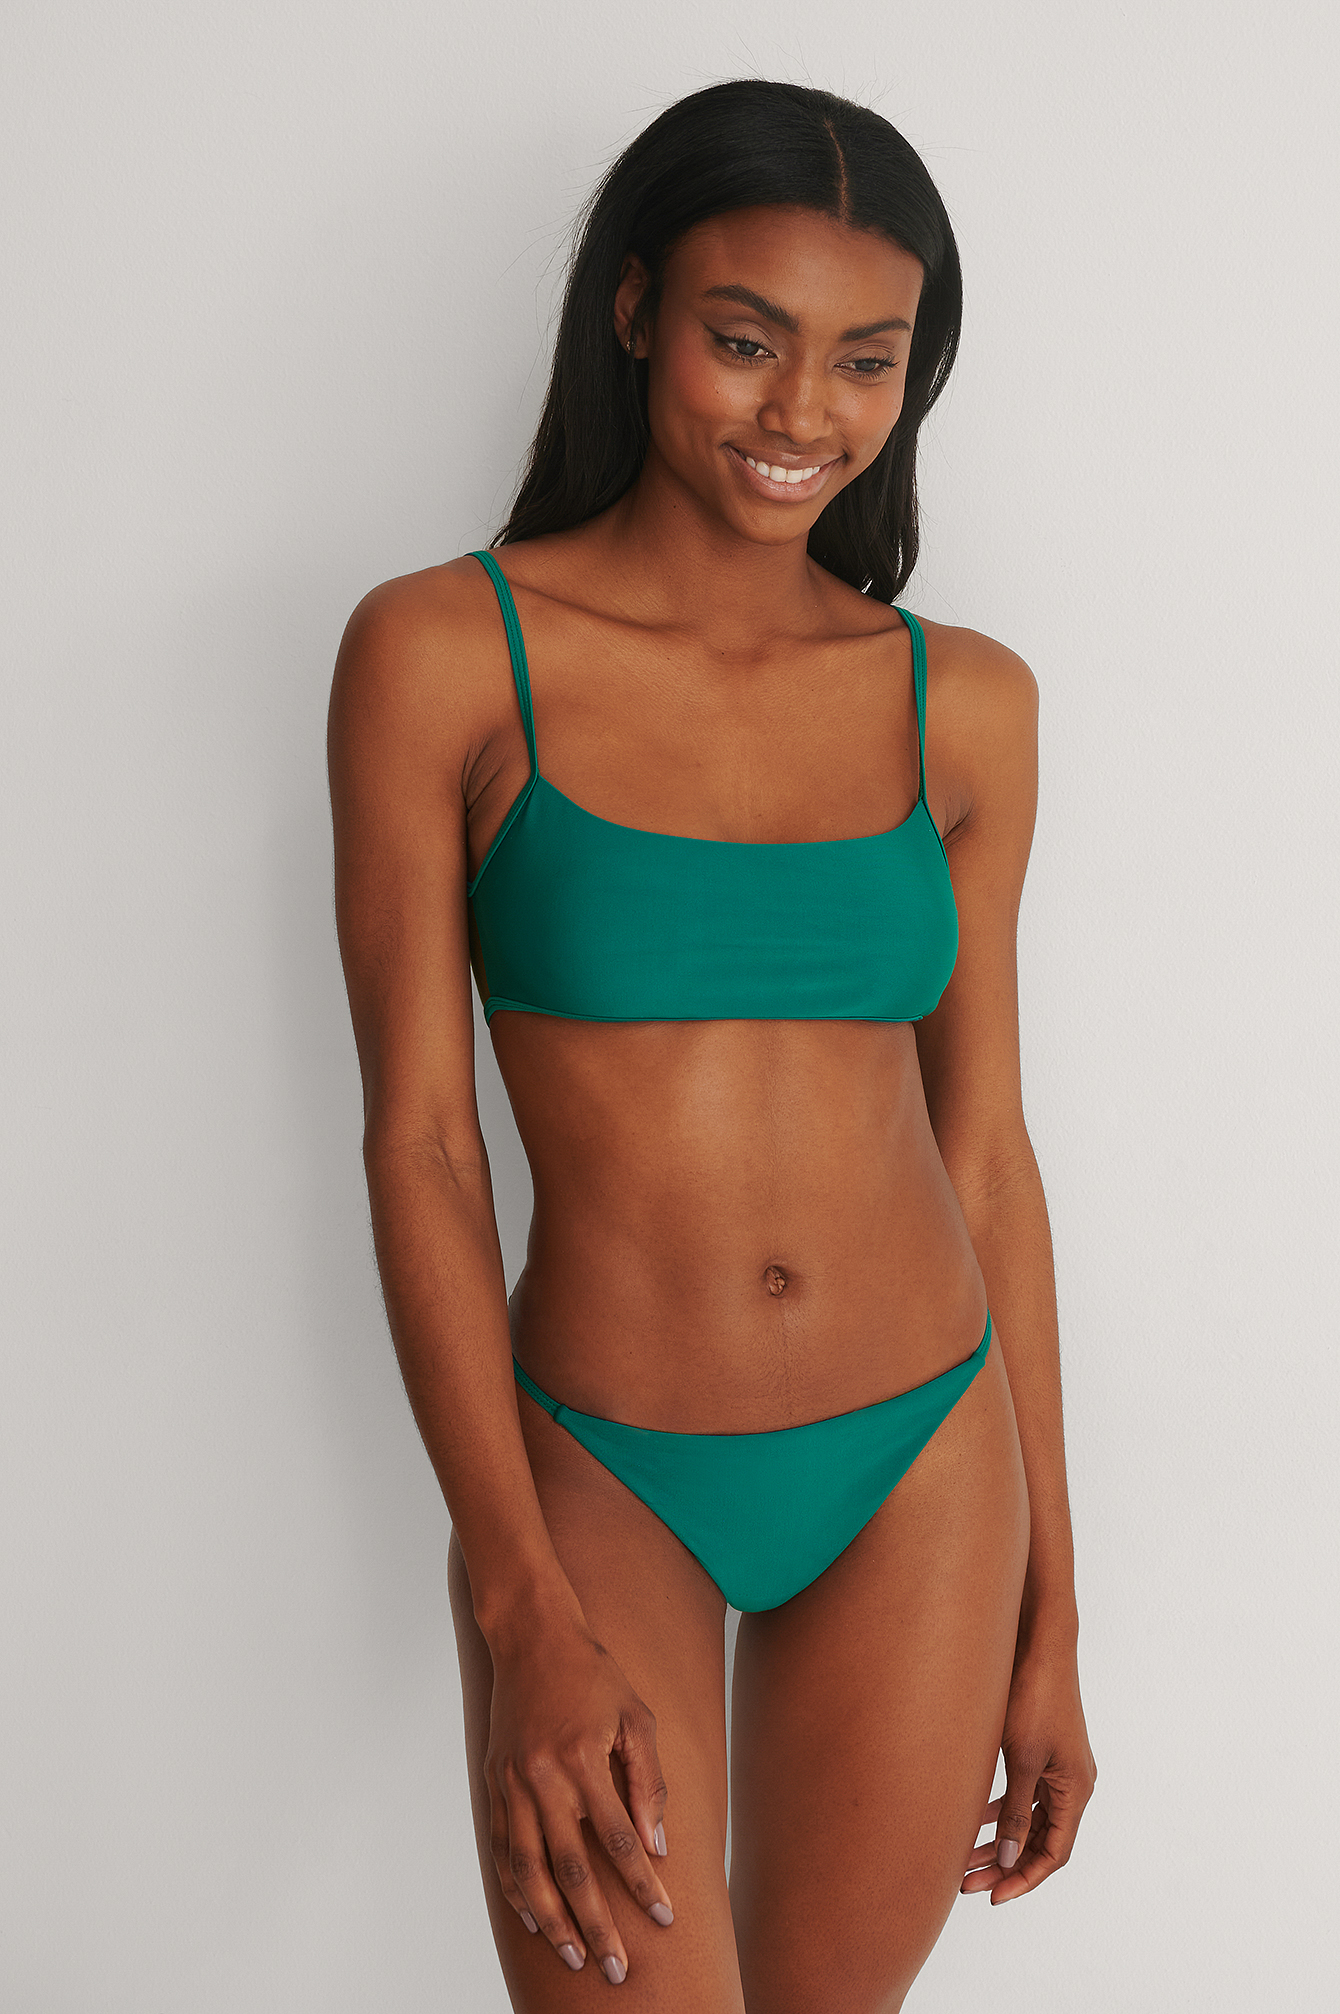 The Green Bikini